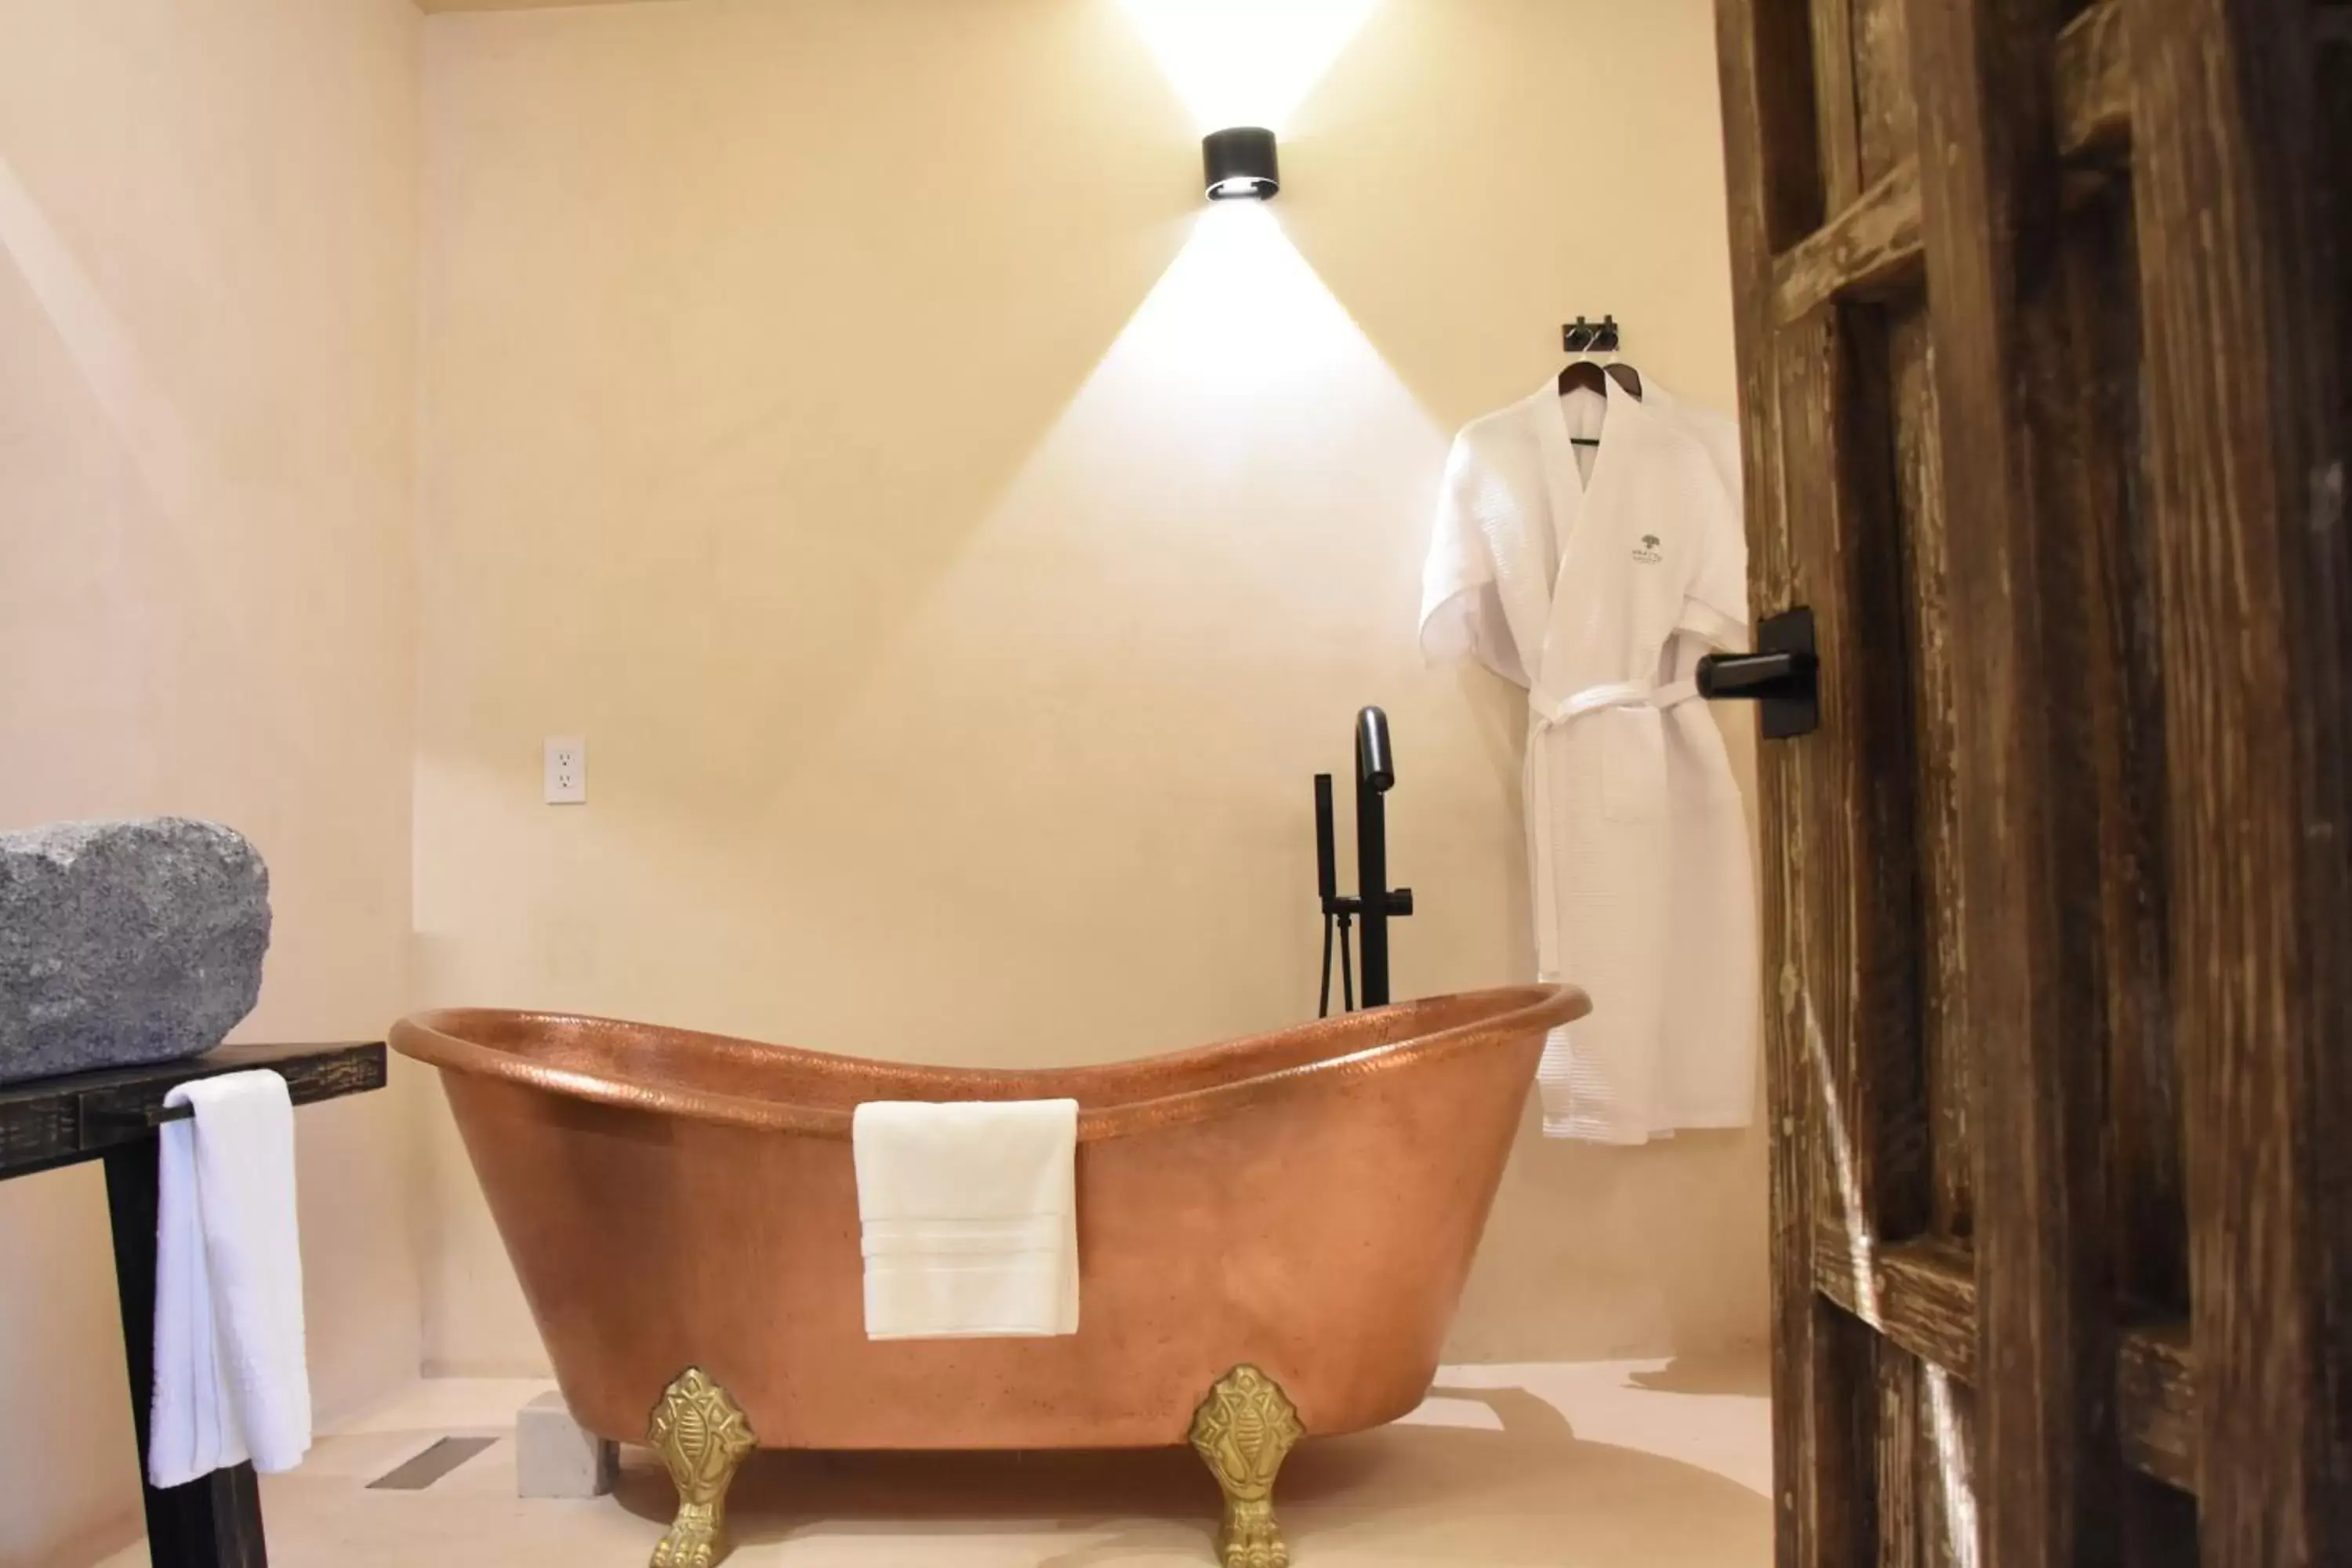 Shower, Bathroom in Amatte San Miguel de Allende